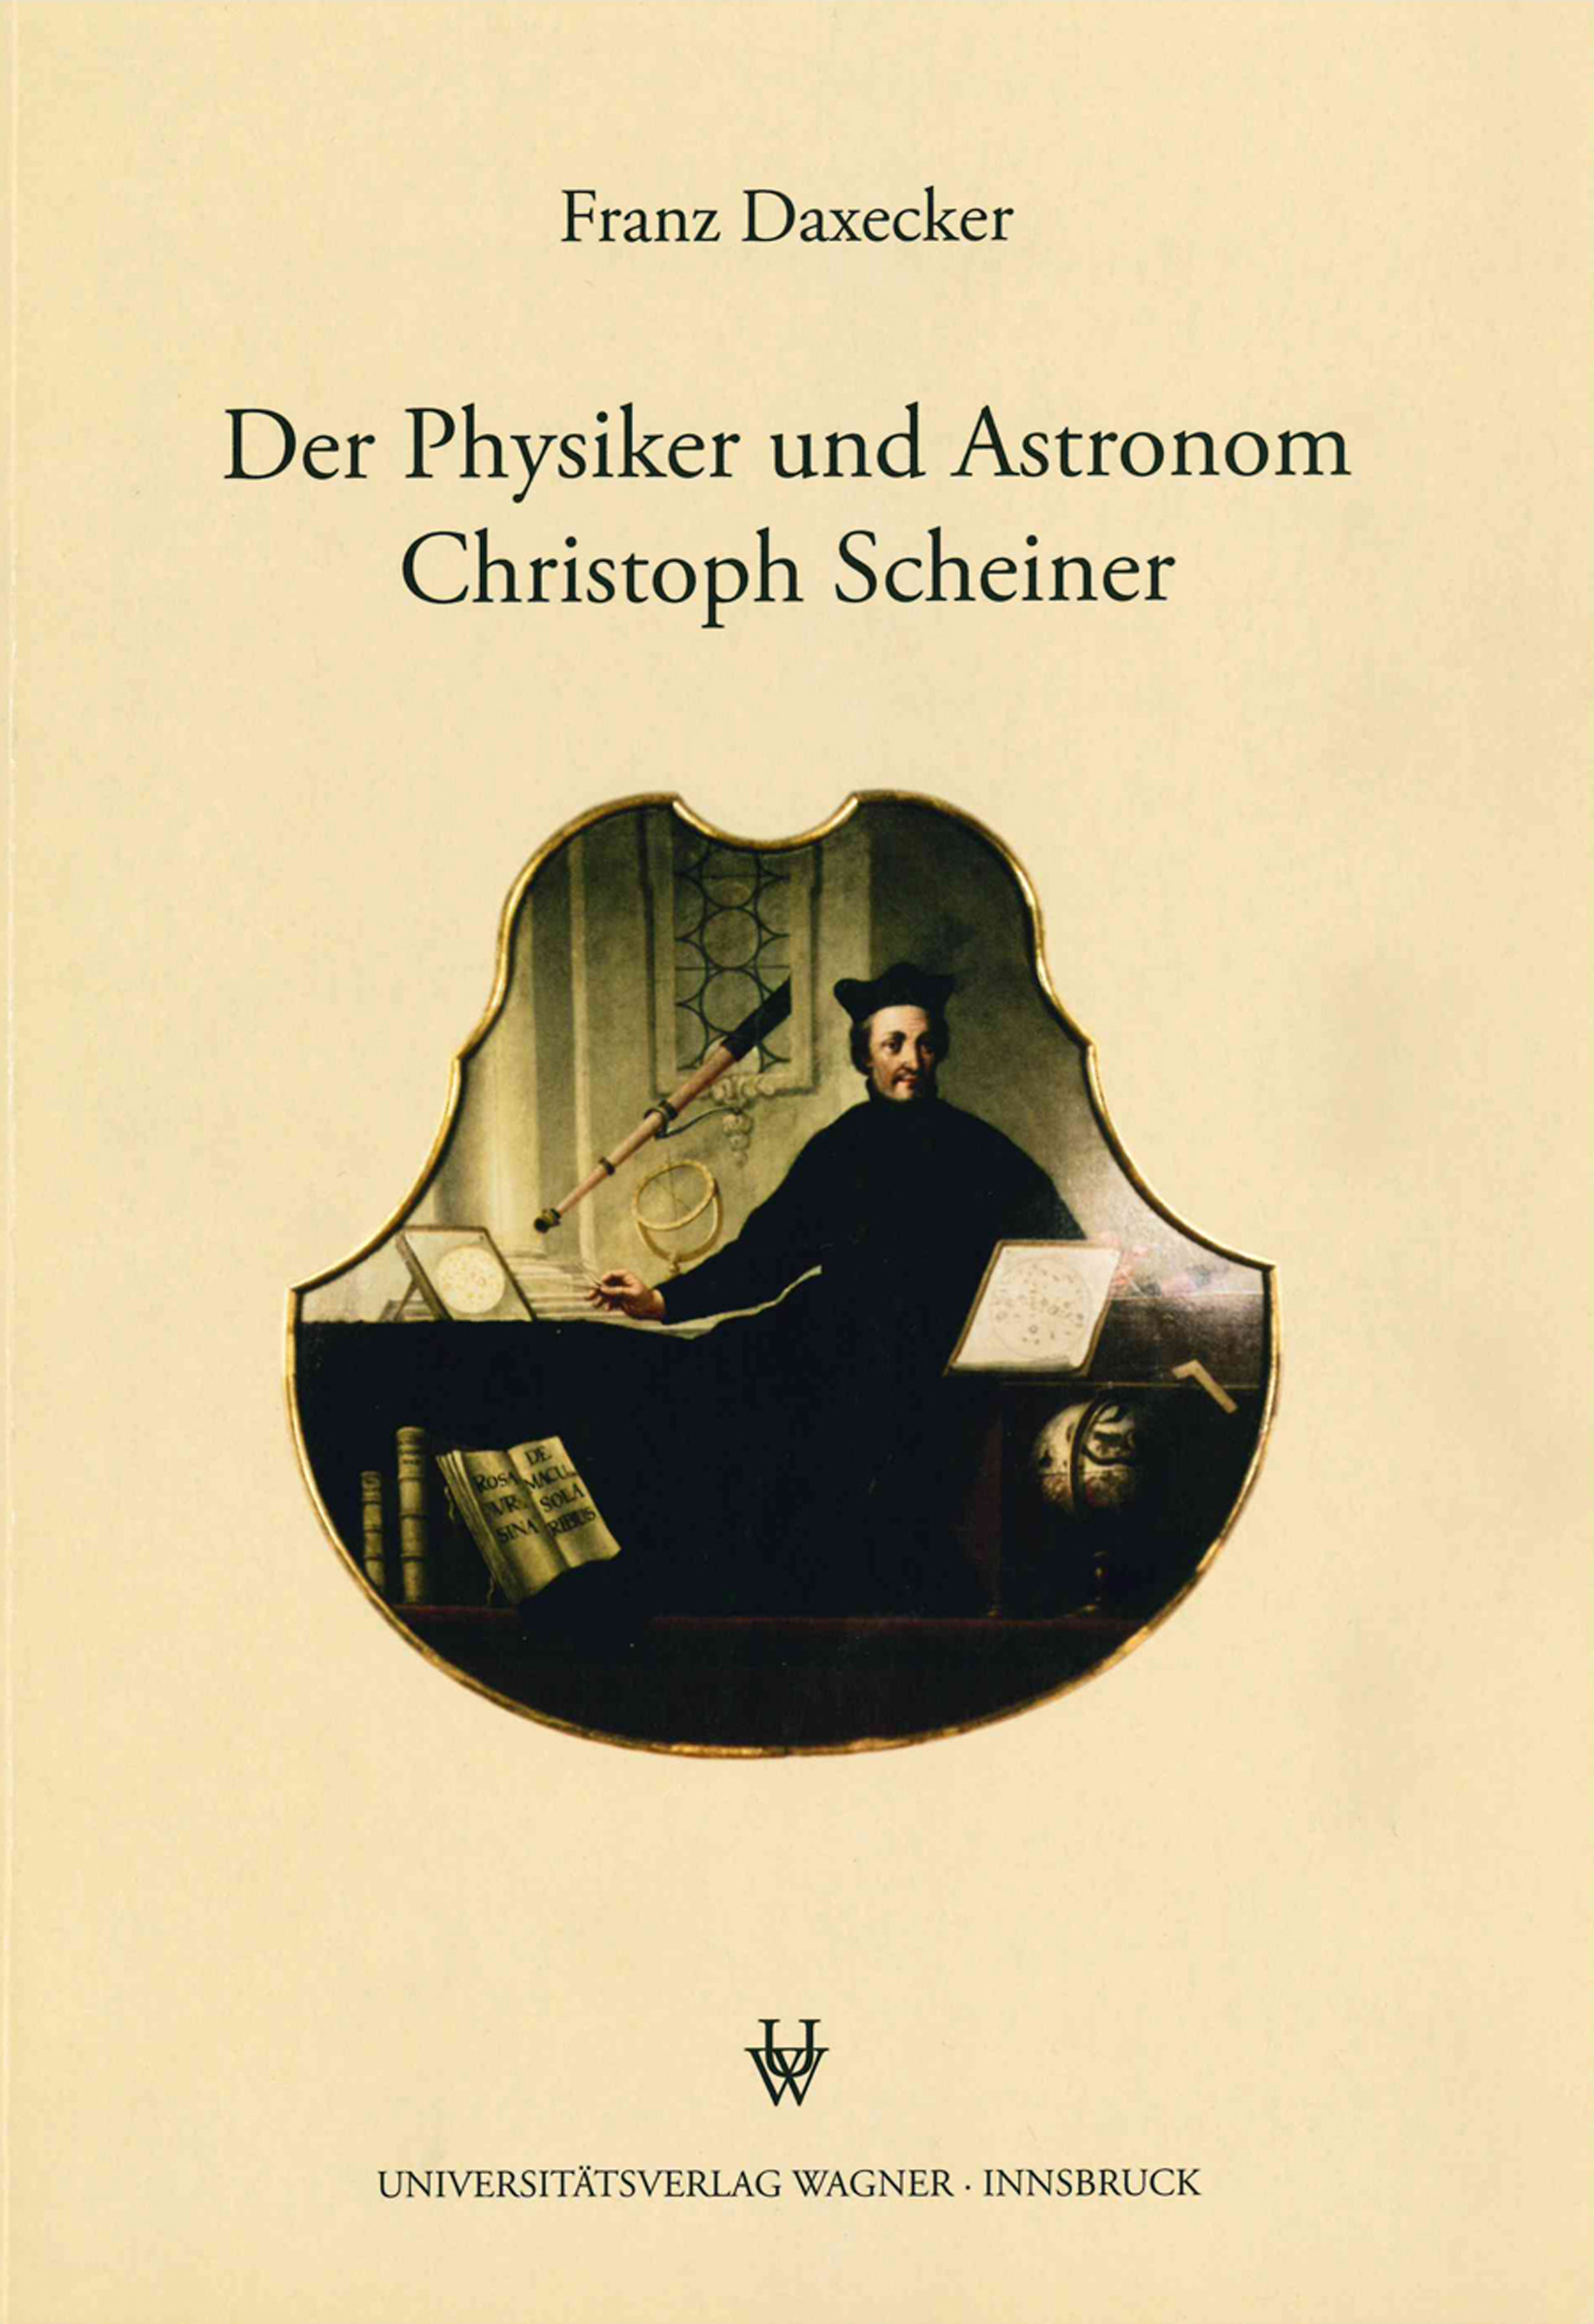 Franz Daxecker / Der Physiker und Astronom Christoph Scheiner - Franz Daxecker